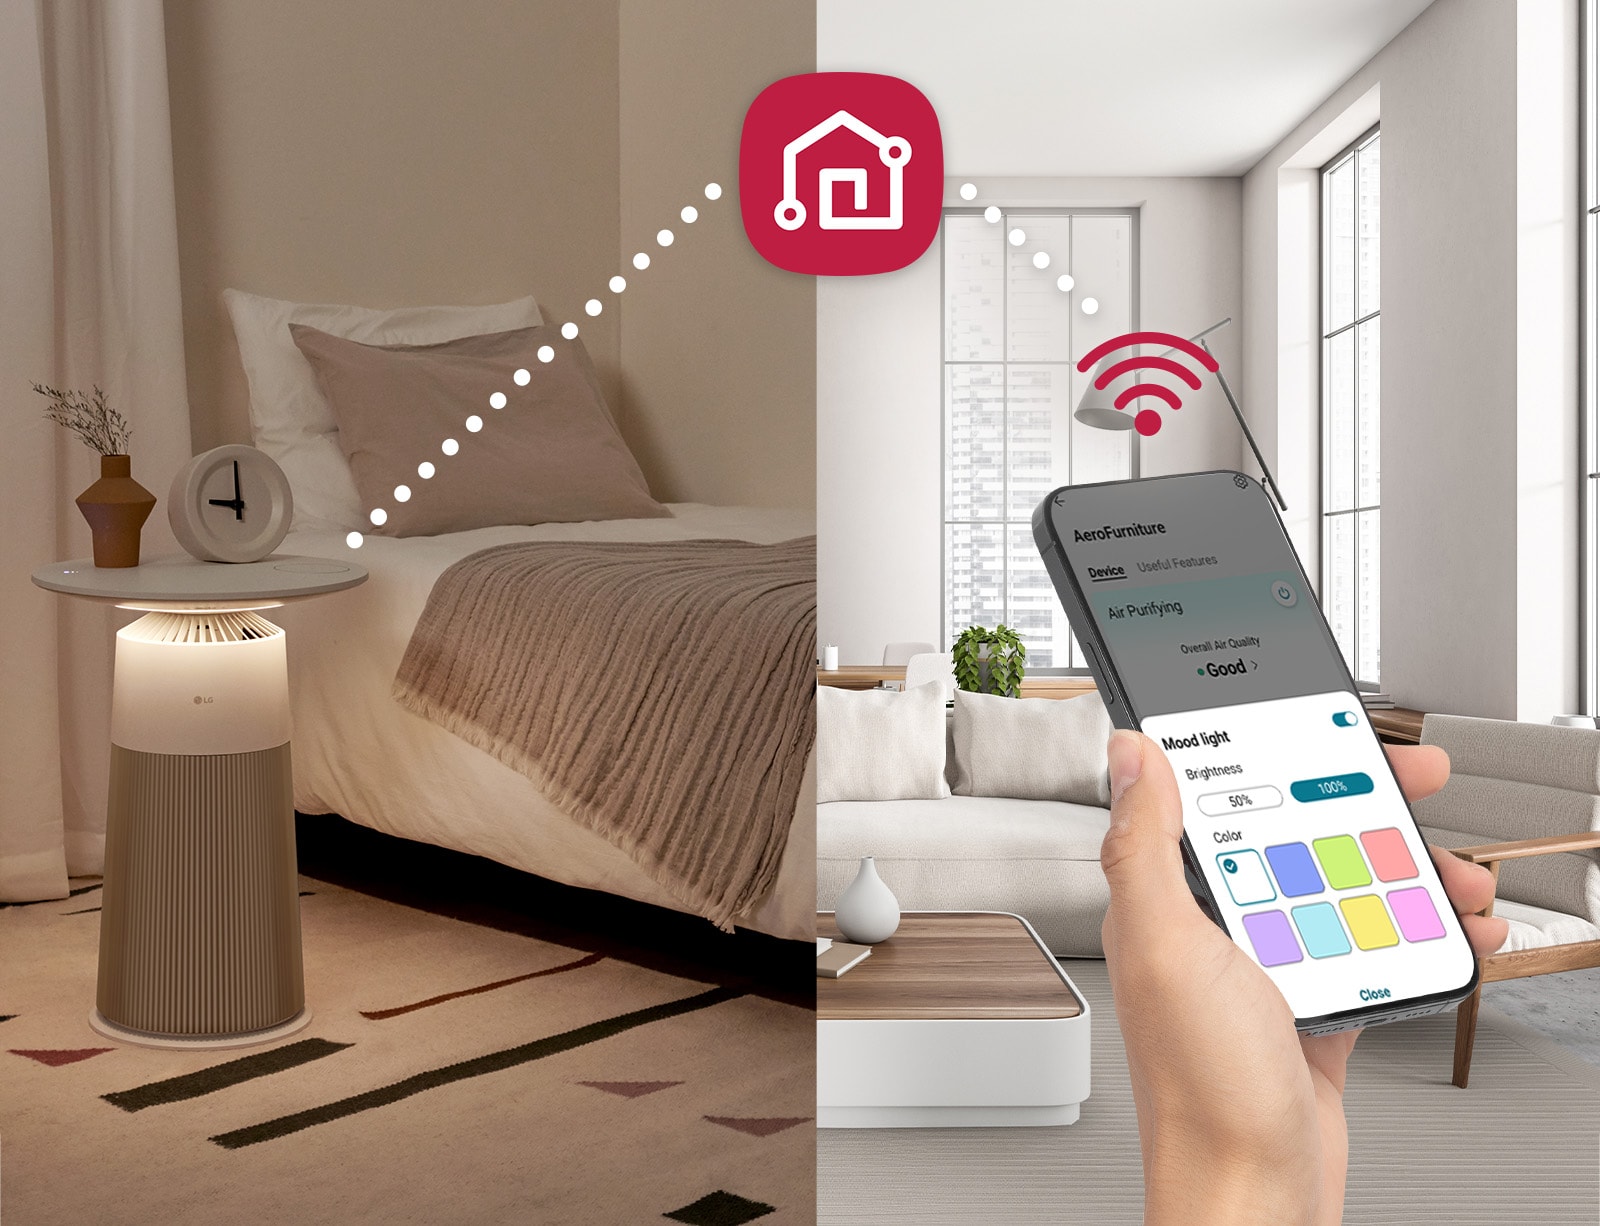 臥室的產品可使用智慧型手機遠距控制。